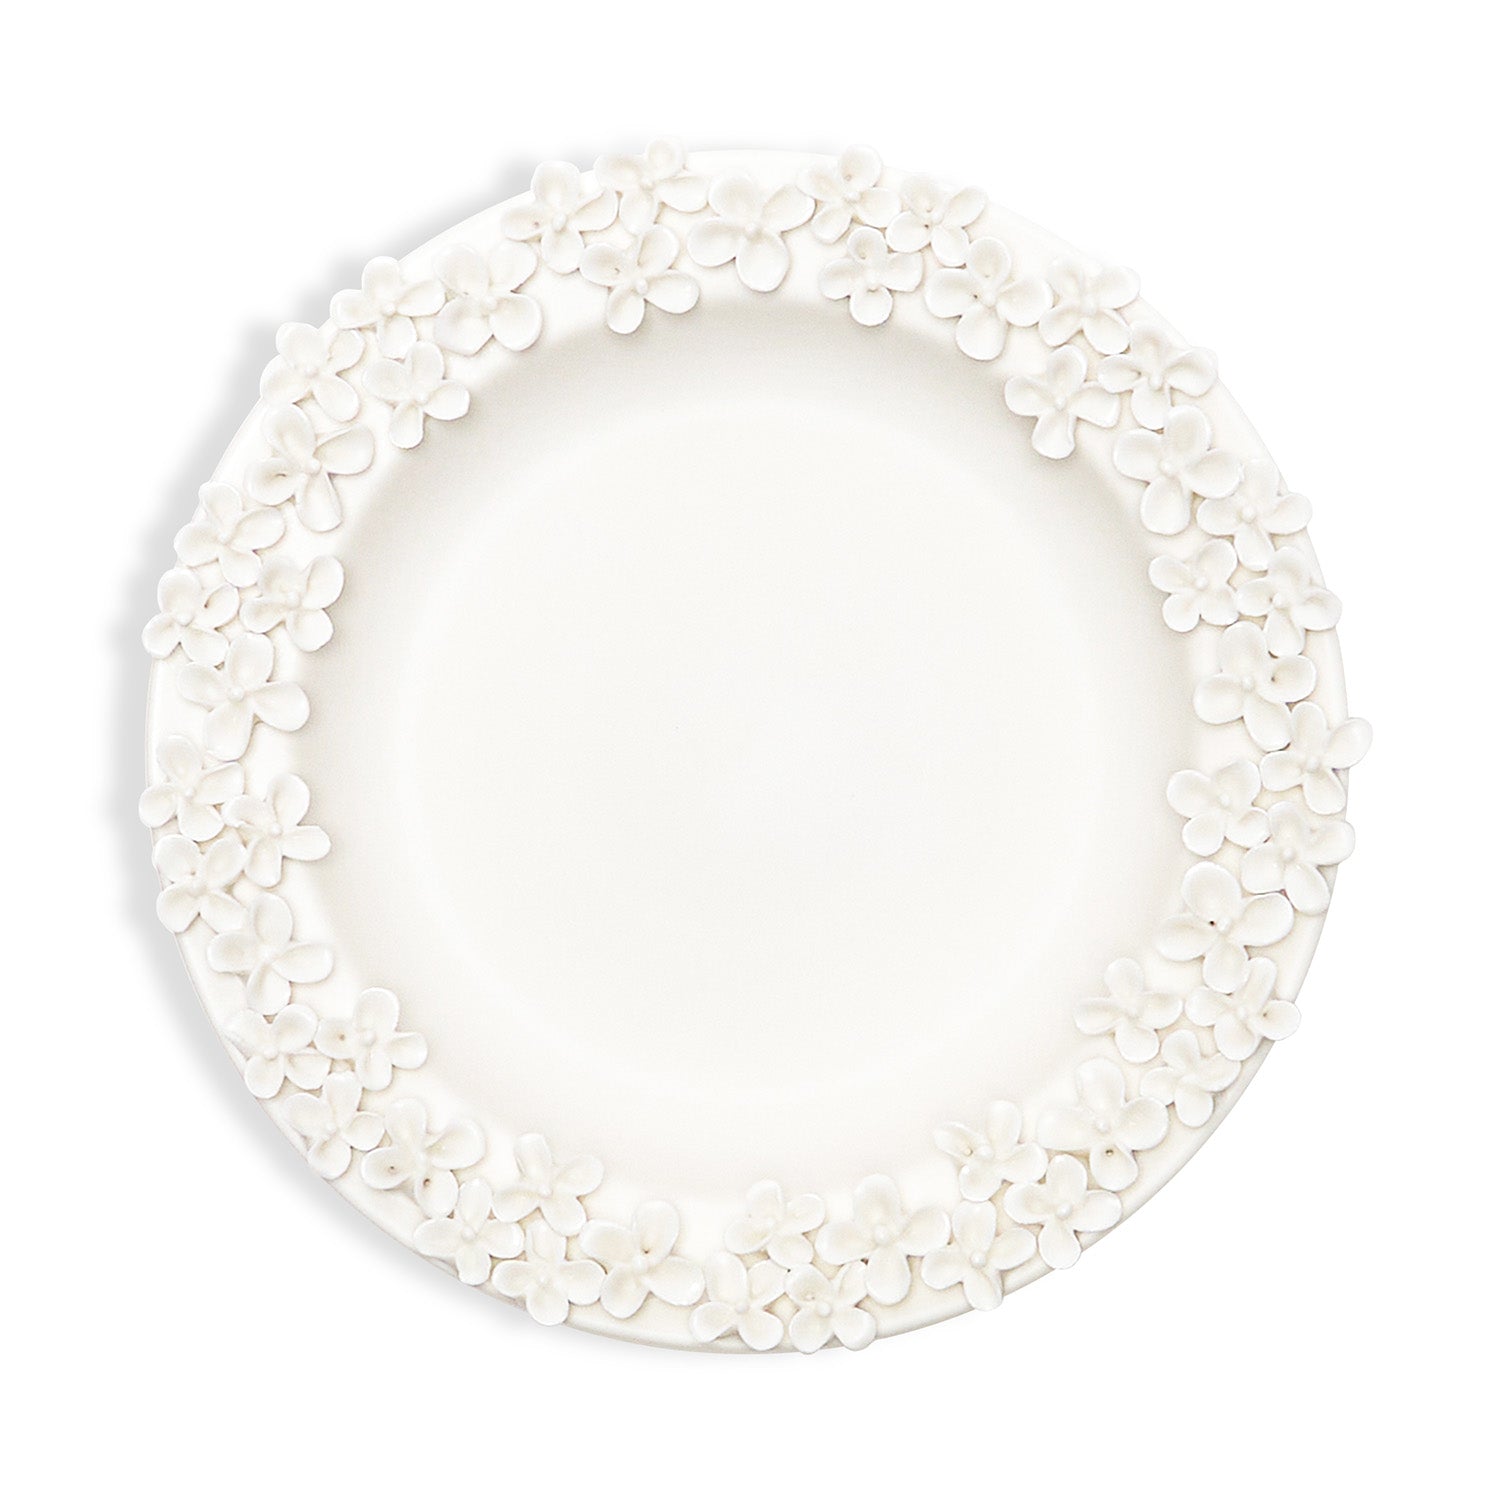 Hydrangea Tray - Catchall Porcelain Tray